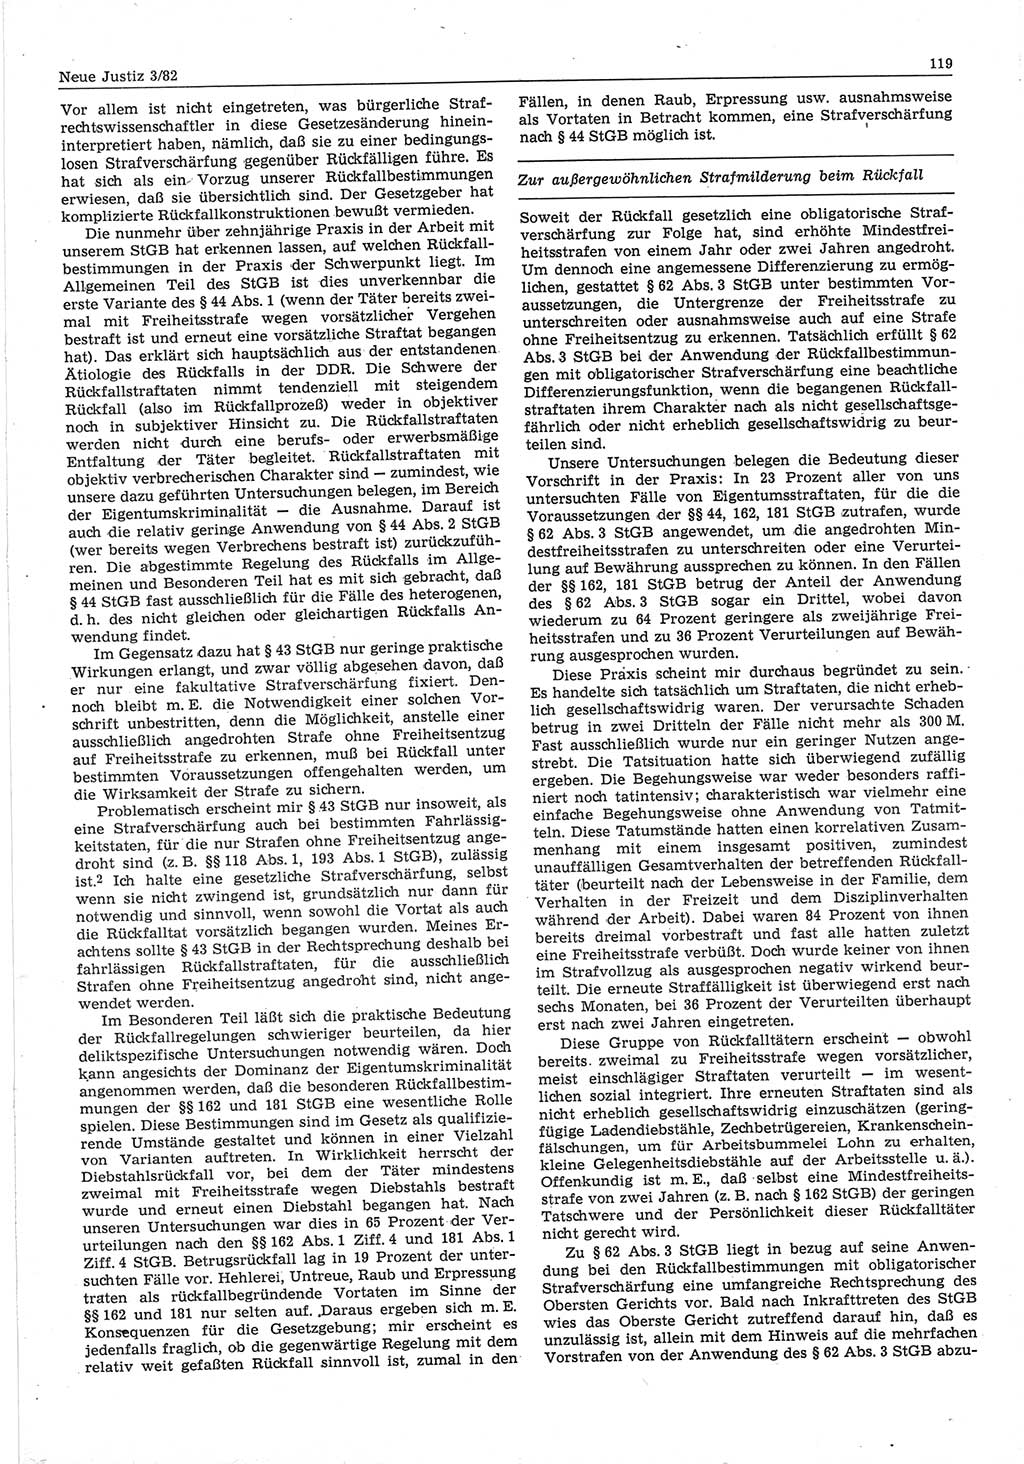 Neue Justiz (NJ), Zeitschrift für sozialistisches Recht und Gesetzlichkeit [Deutsche Demokratische Republik (DDR)], 36. Jahrgang 1982, Seite 119 (NJ DDR 1982, S. 119)